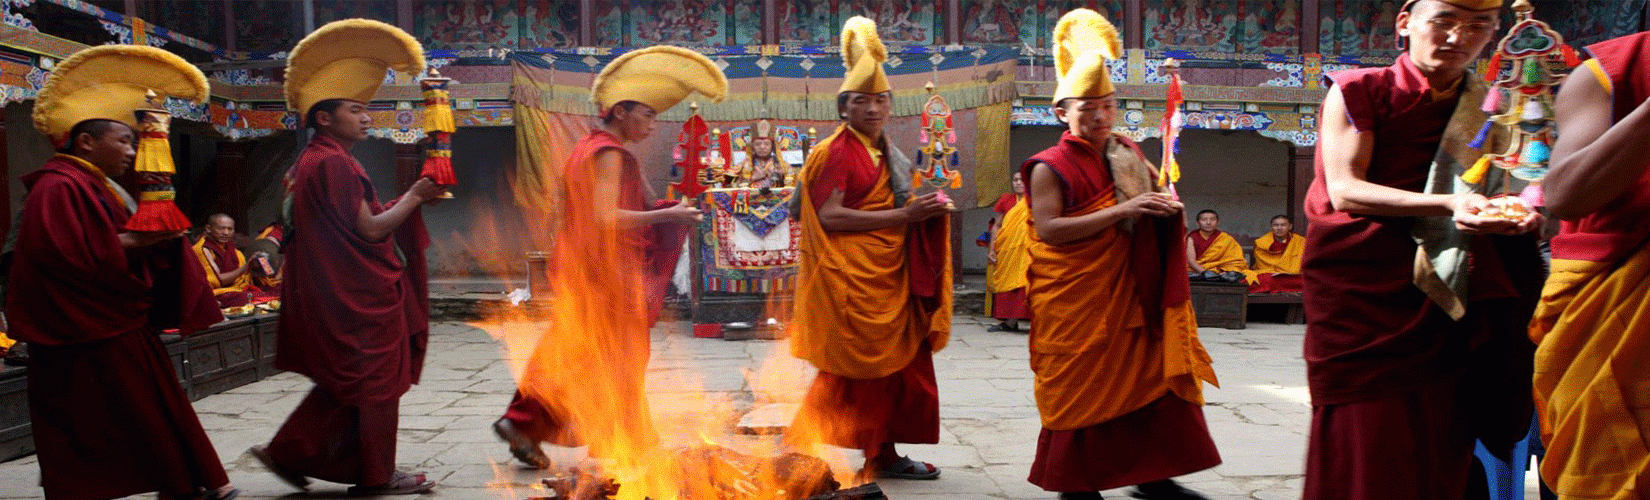 Manirimdu Festival